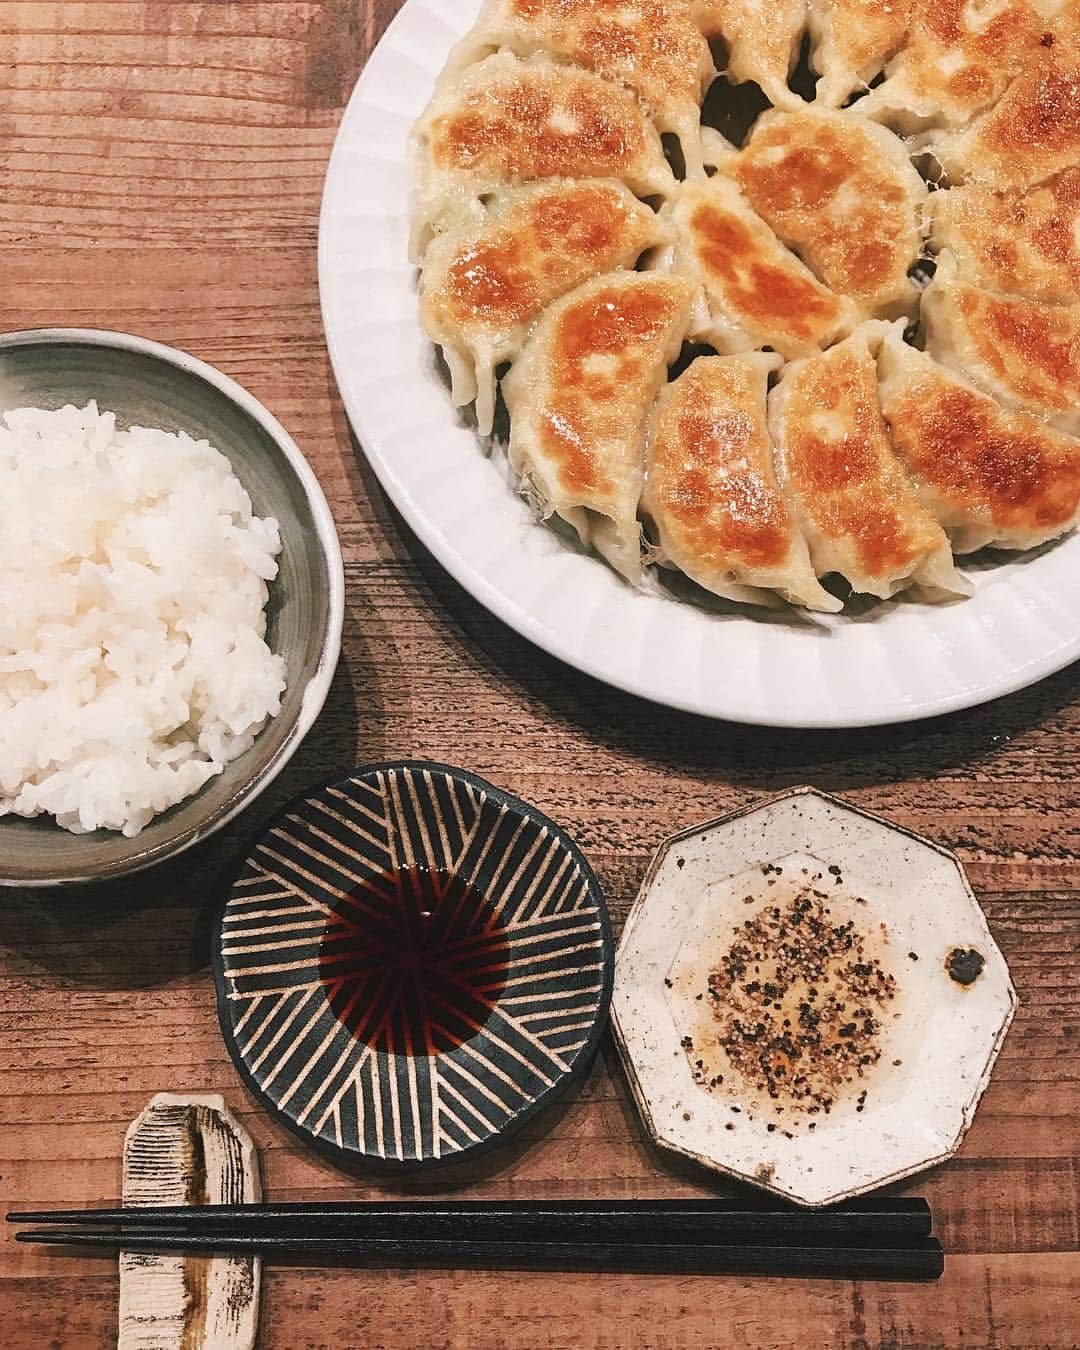 瀬戸晴加のインスタグラム：「久しぶりの投稿は餃子。いつものダシダと干し椎茸入りの豚肉餃子に、少しだけお試しでパクチーとナンプラーを入れたエスニック餃子もトライ。具材粗めでザクザクの餡に。STAUBで炊いた炊きたてのご飯に載せて、一皿15個一人でペロッと食べちゃいました🤦🏻‍♀️笑  #japan #tokyo #food #japanesefood #lifestyle #coocking #dinner #favorite #餃子 #ギョウザ #自炊 #一人暮らしごはん #器 #うつわ #酢コショウ #焼くときはオリーブオイル #今回はエビ抜き」